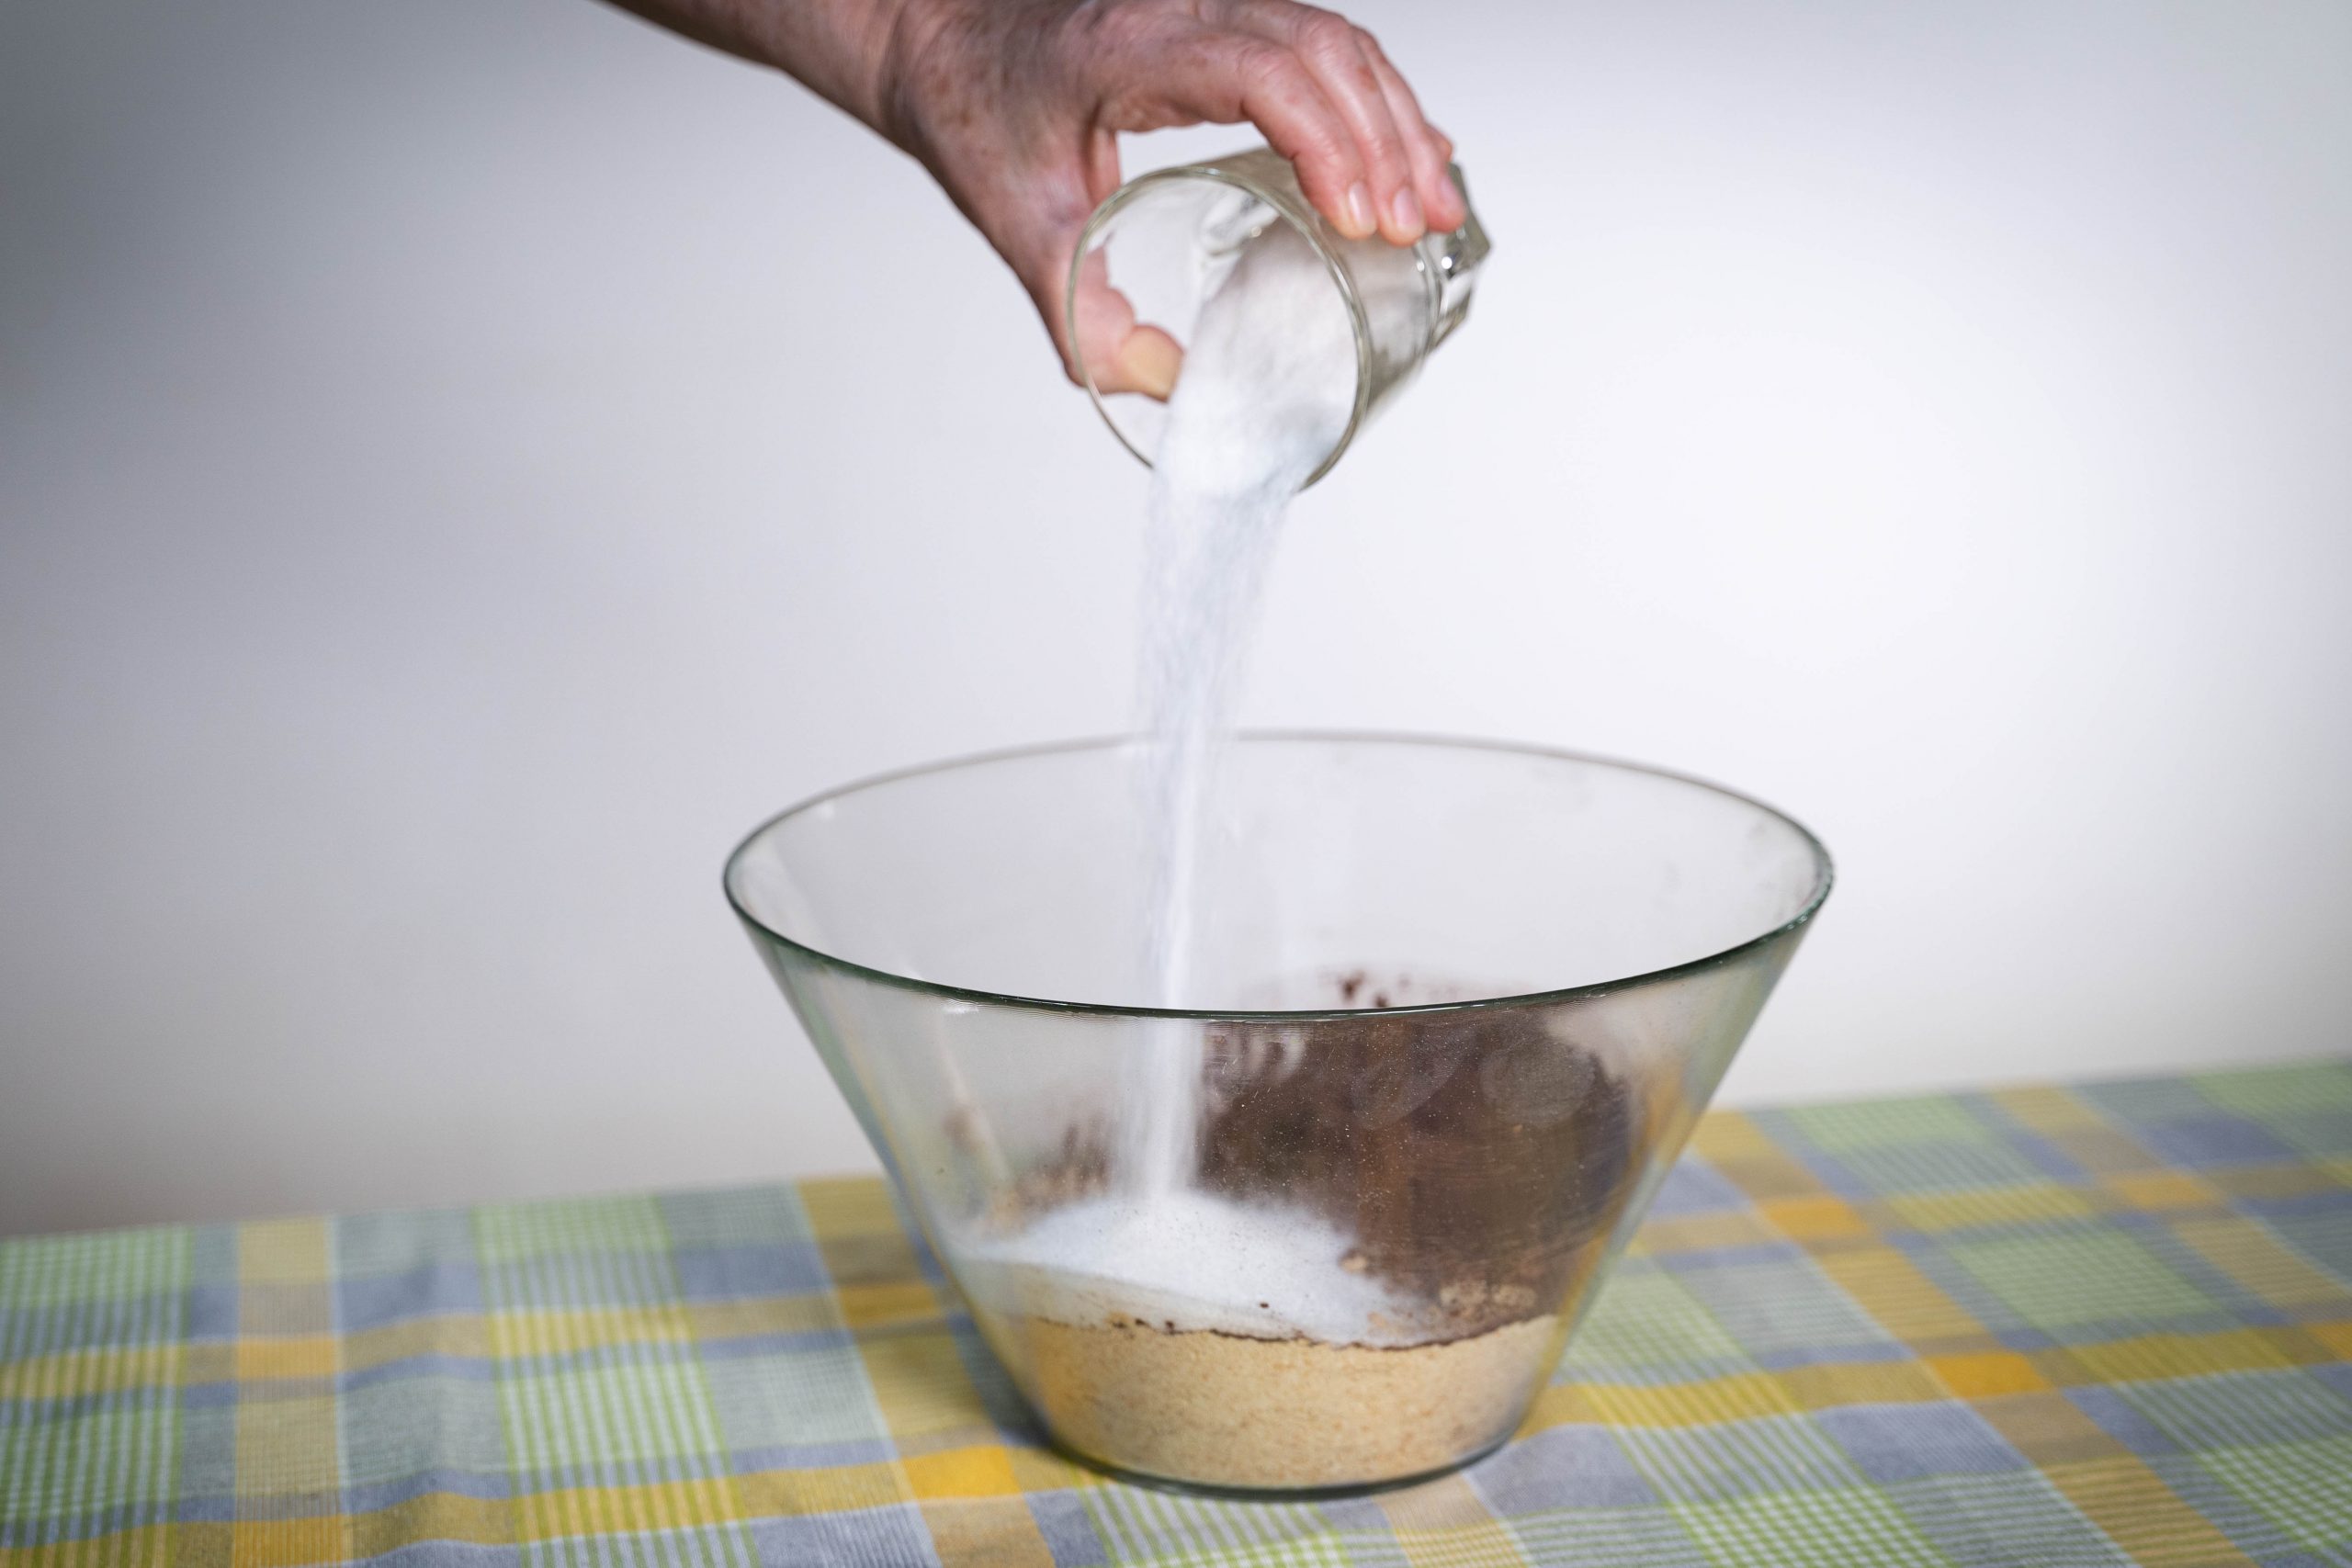 .יד שופכת סוכר מכוס לתוך קערה עם תערובת להכנת כדורי שוקולד